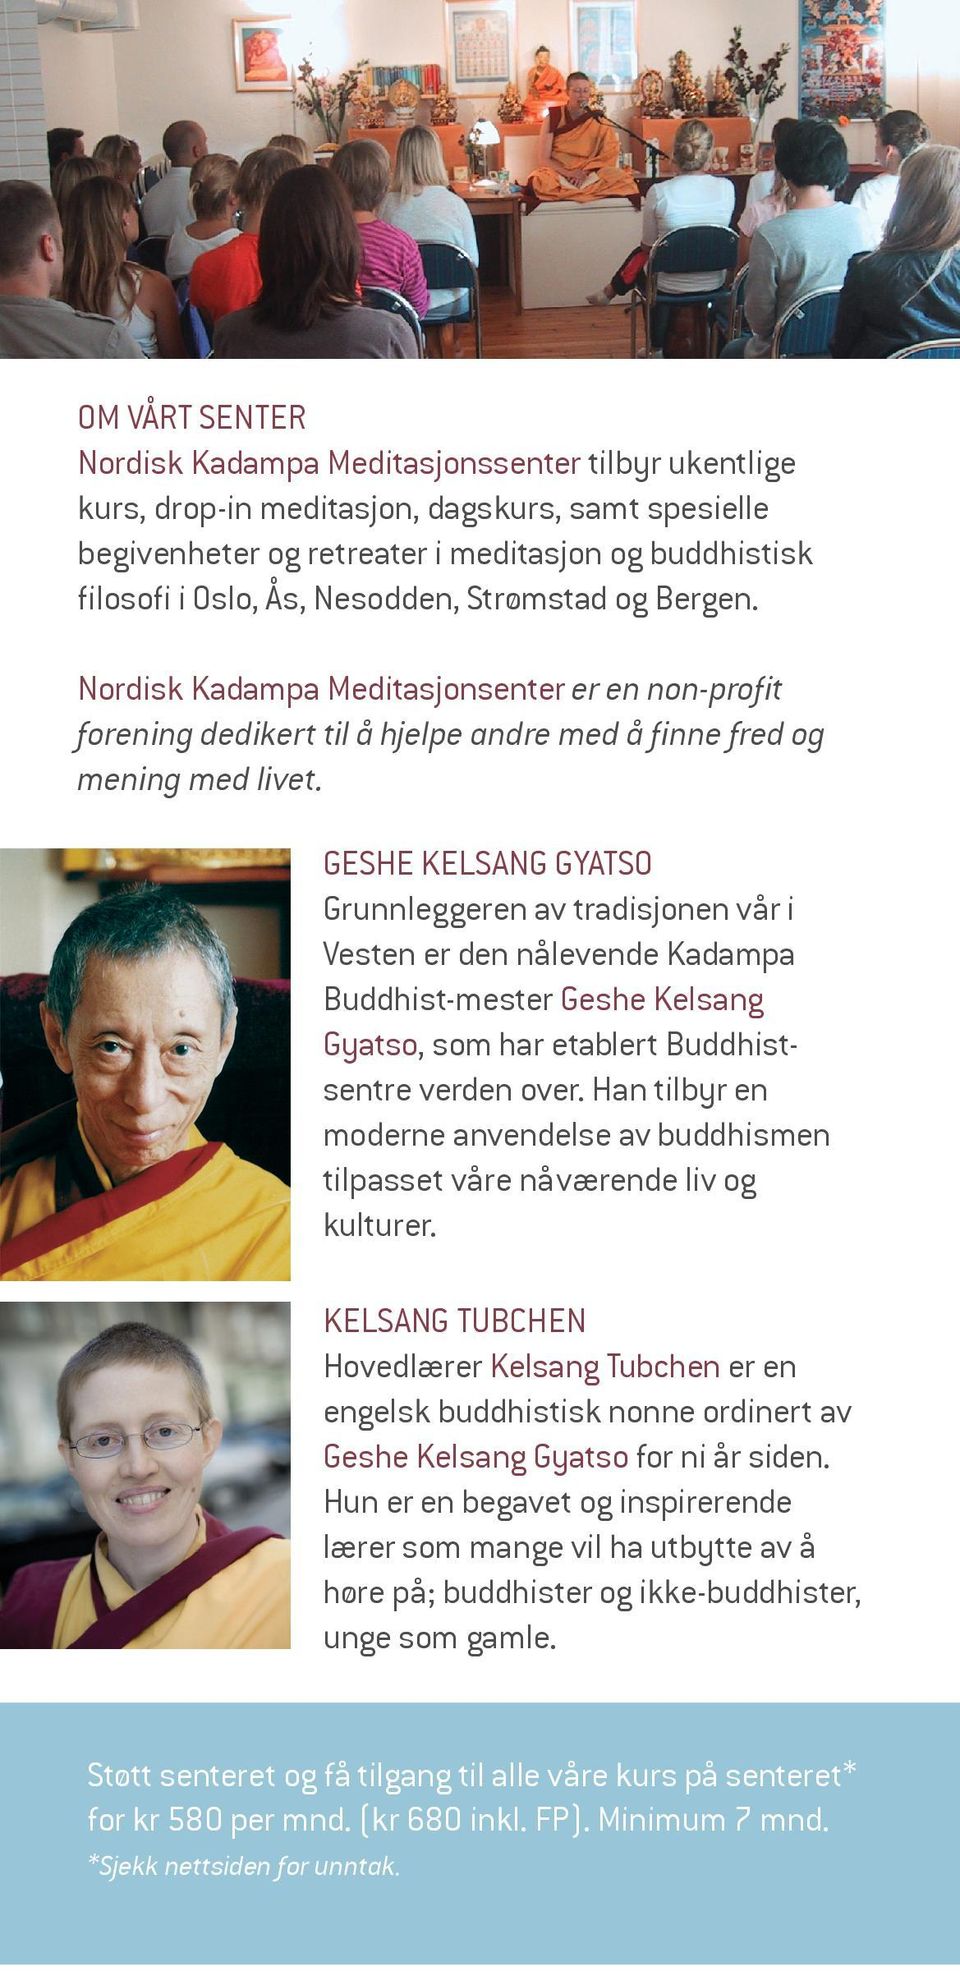 GESHE KELSANG GYATSO Grunnleggeren av tradisjonen vår i Vesten er den nålevende Kadampa Buddhist-mester Geshe Kelsang Gyatso, som har etablert Buddhistsentre verden over.